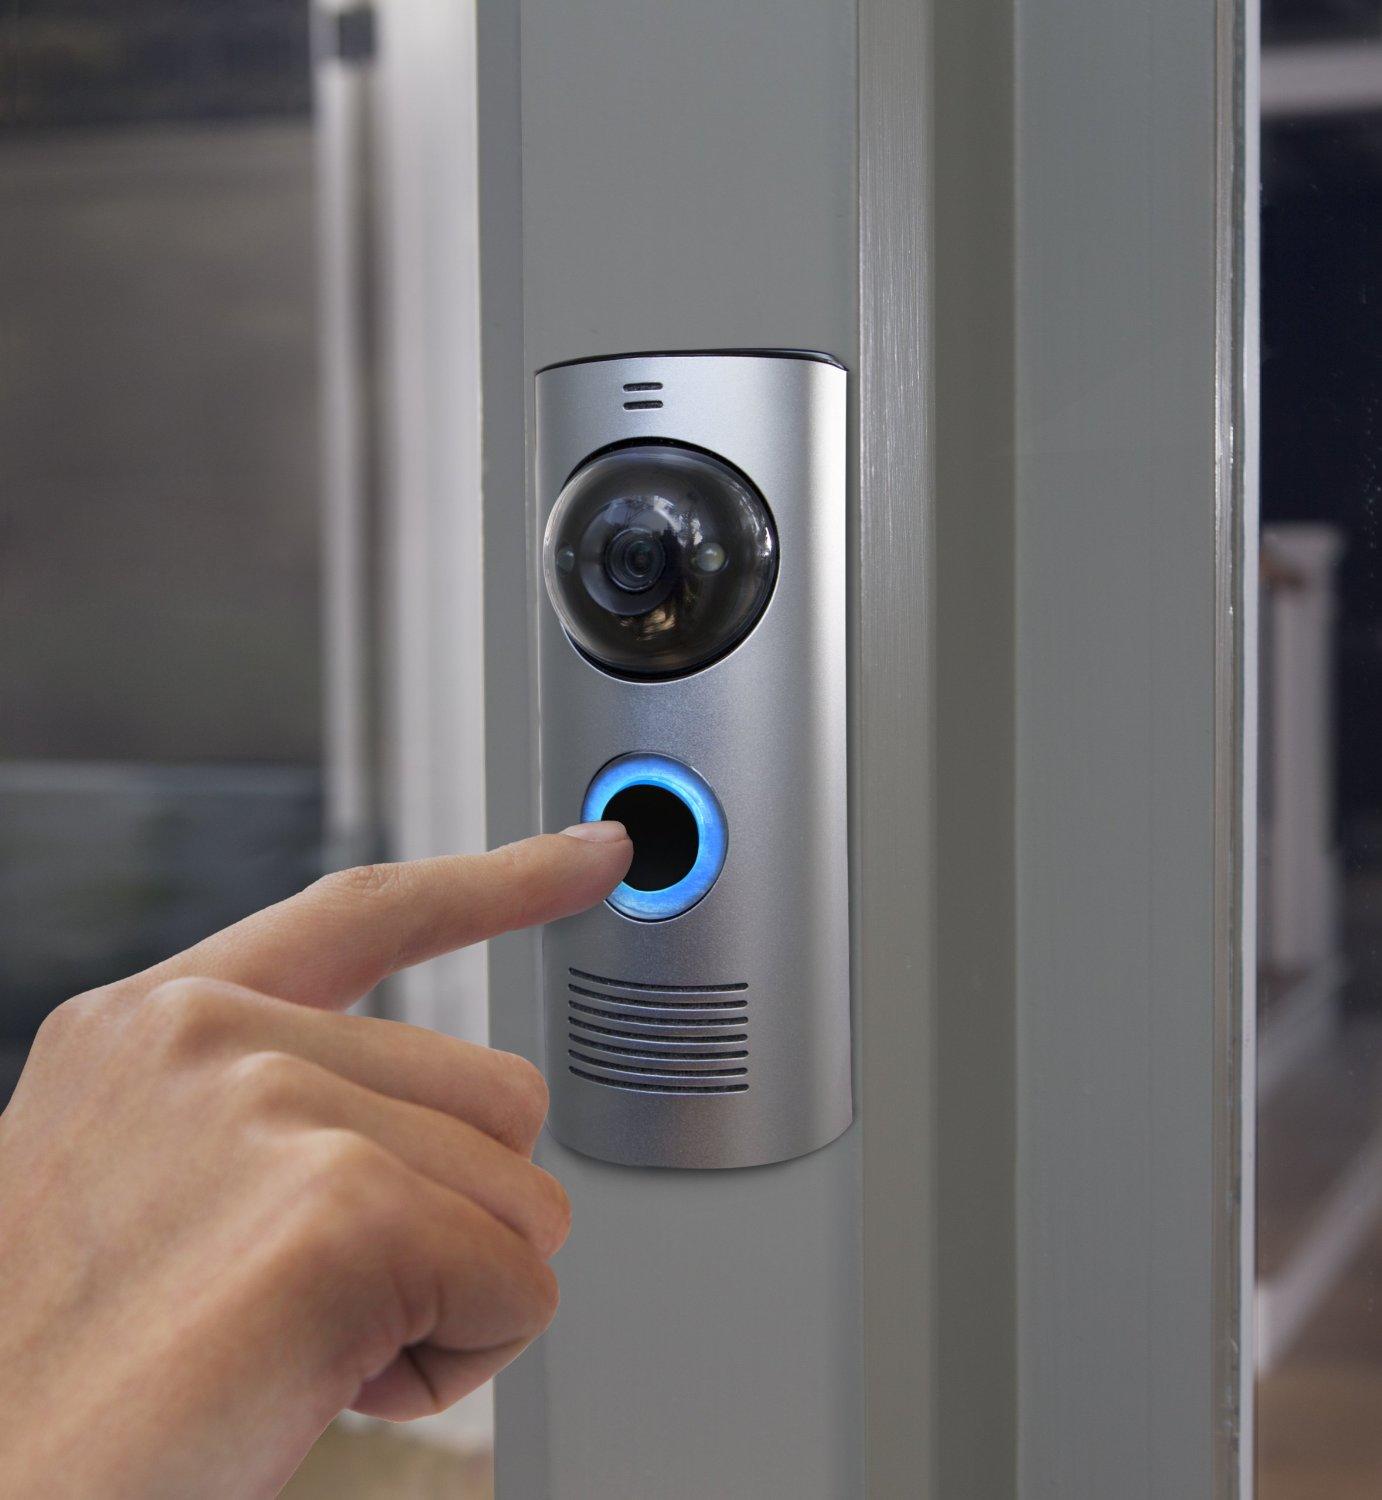 Беспроводной звонок с камерой на дверь дома позволяет узнать, кто находится на вашем пороге



